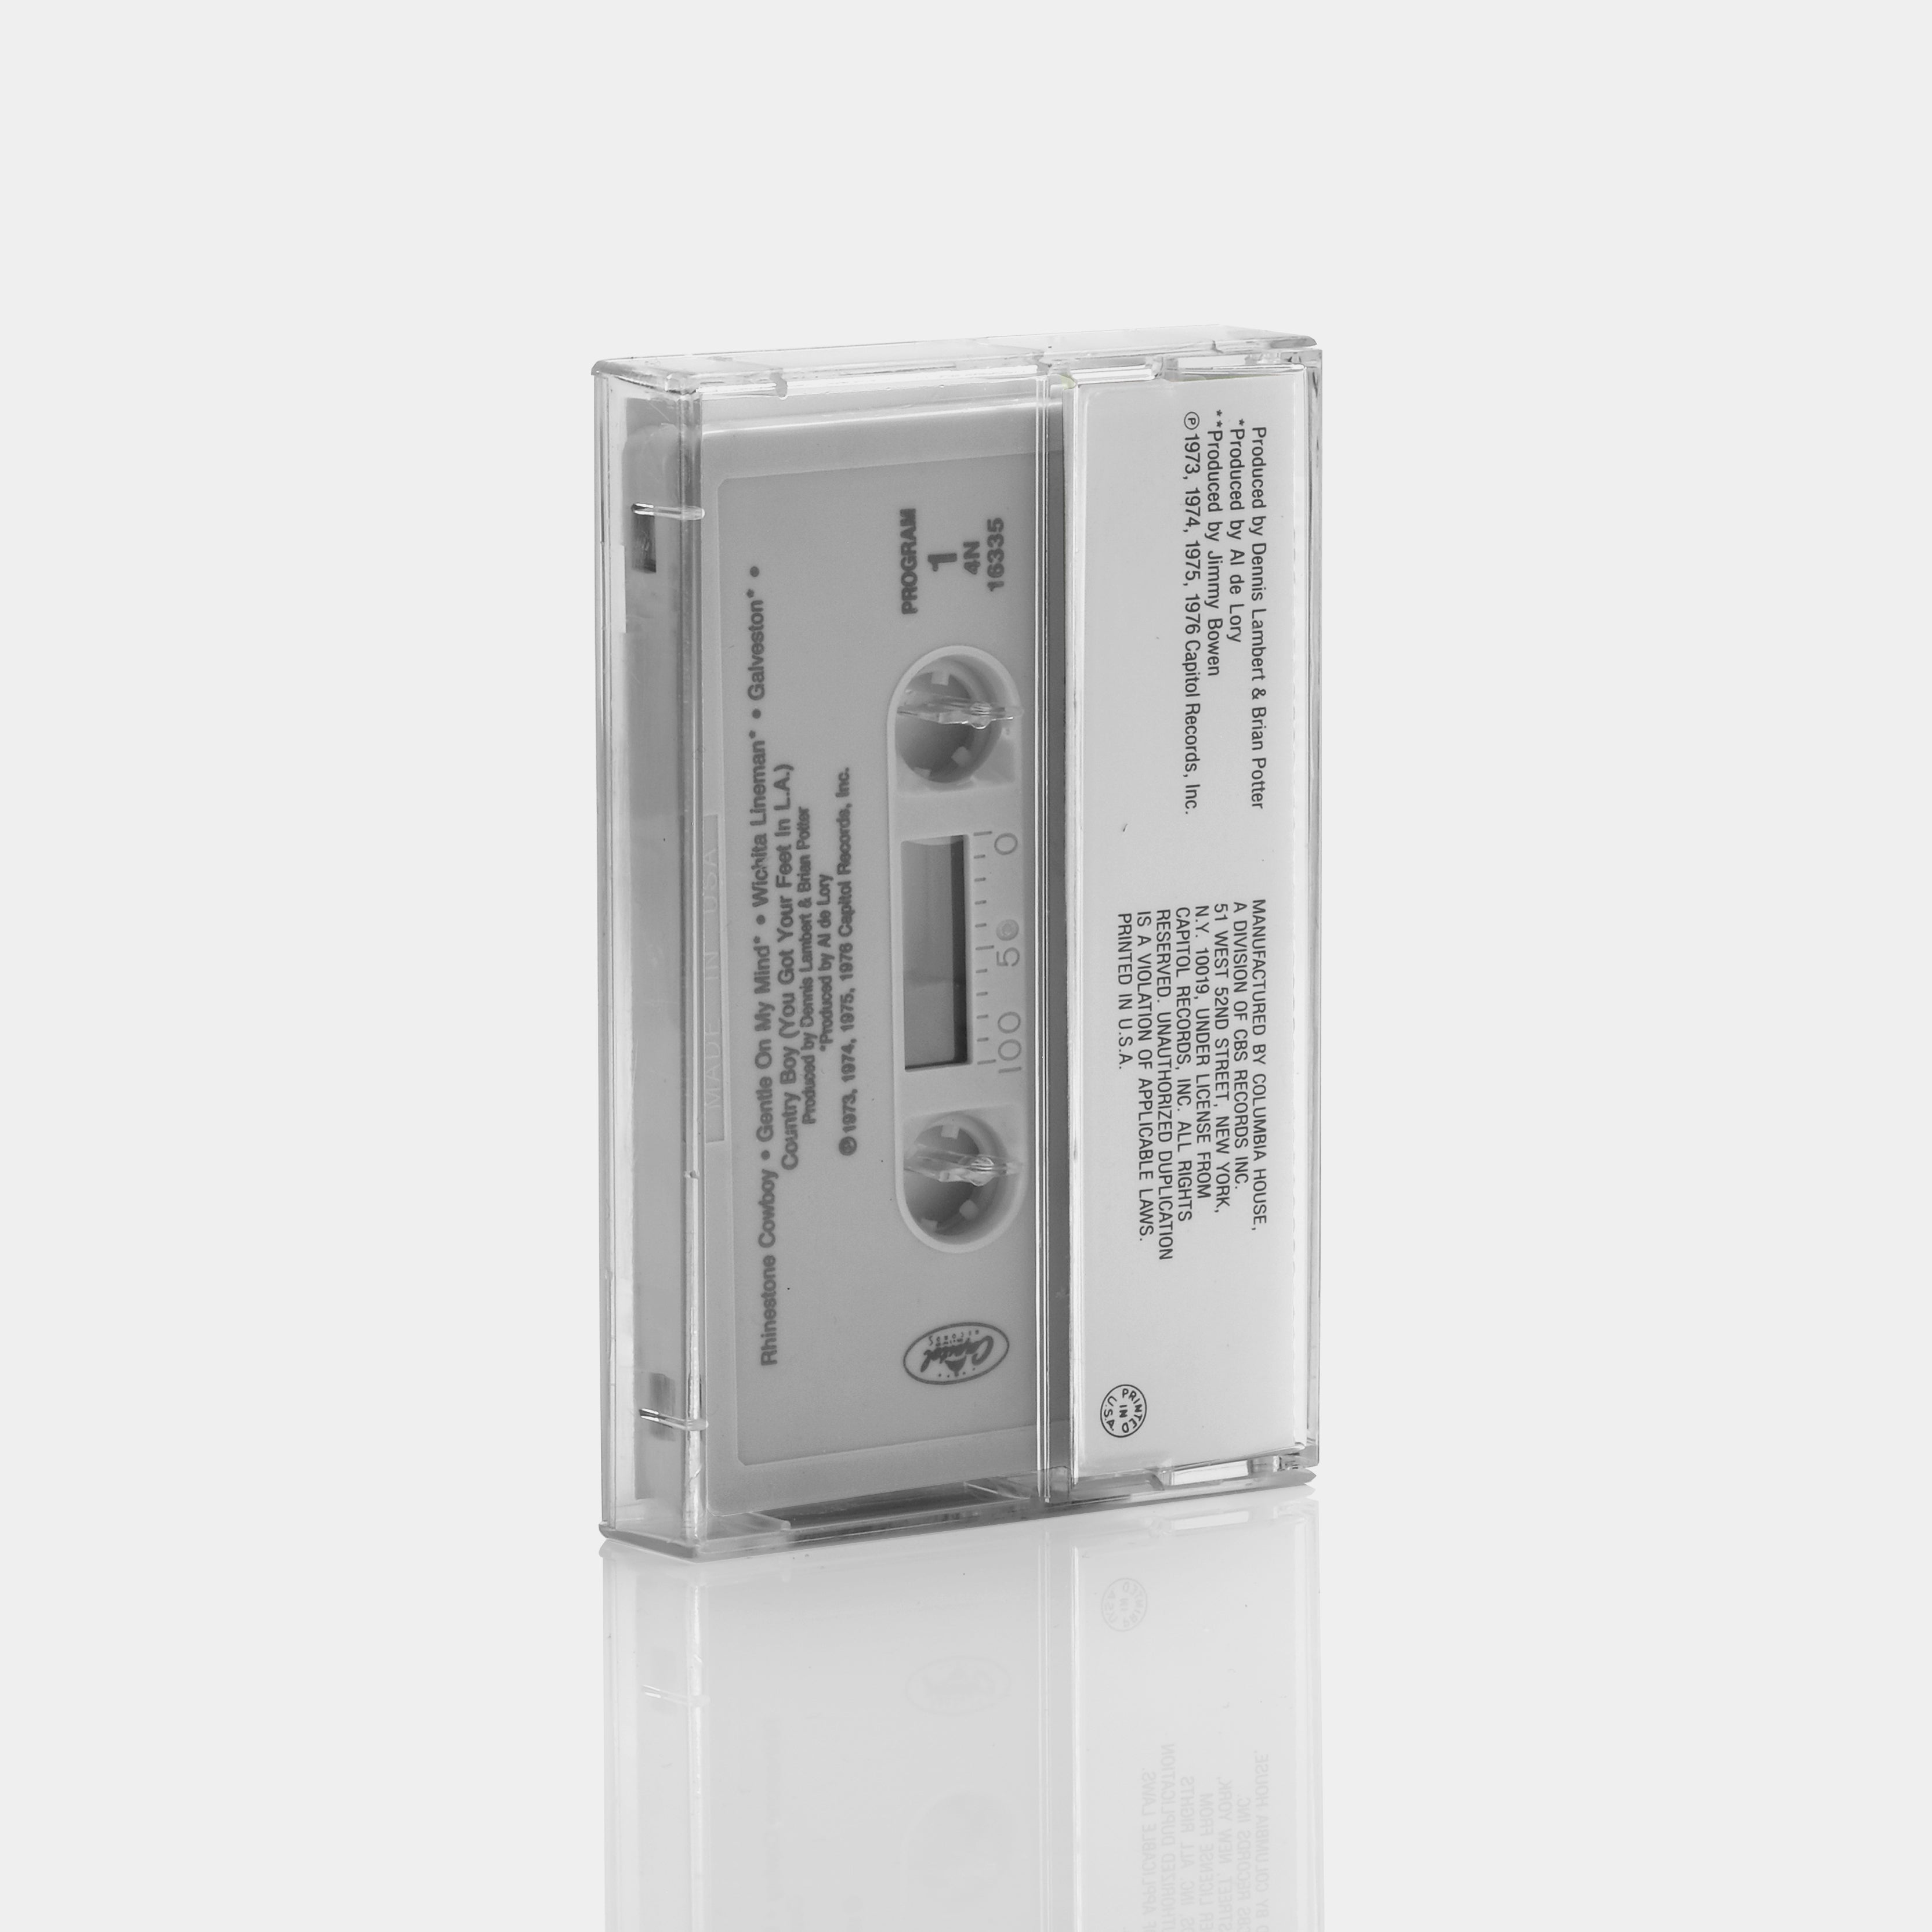 Glen Campbell - The Best Of Glen Campbell Cassette Tape